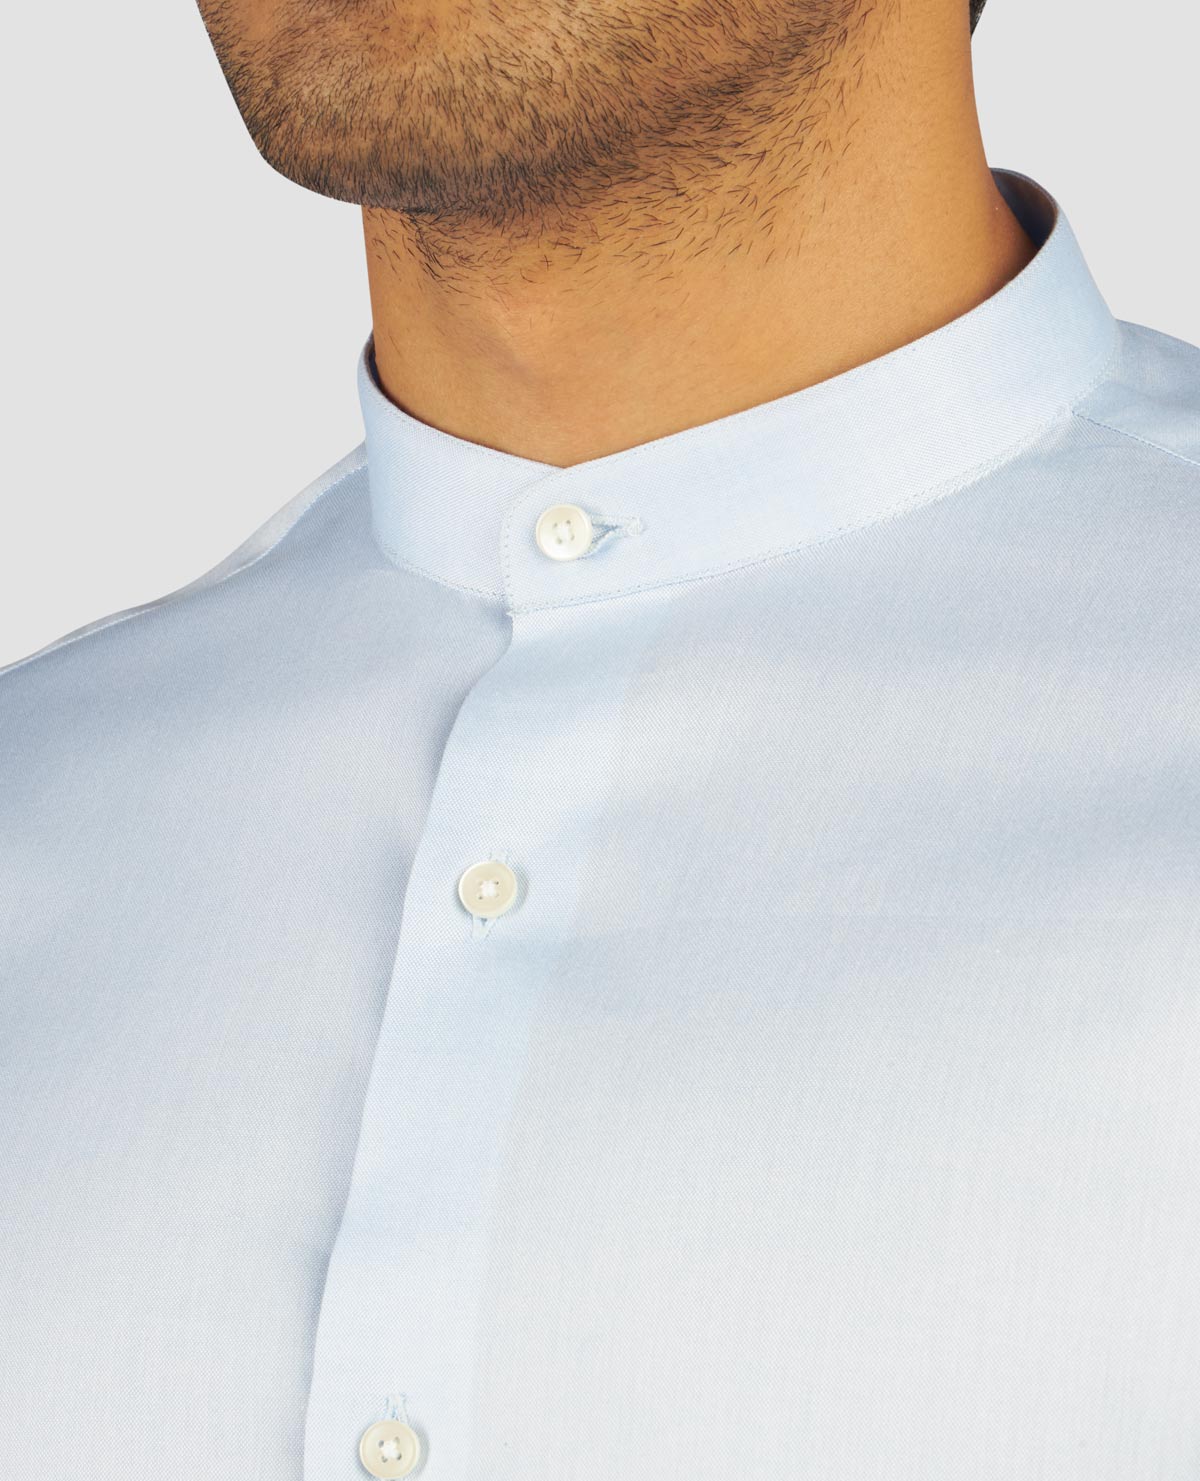 2-Ply Light Blue Oxford Shirt